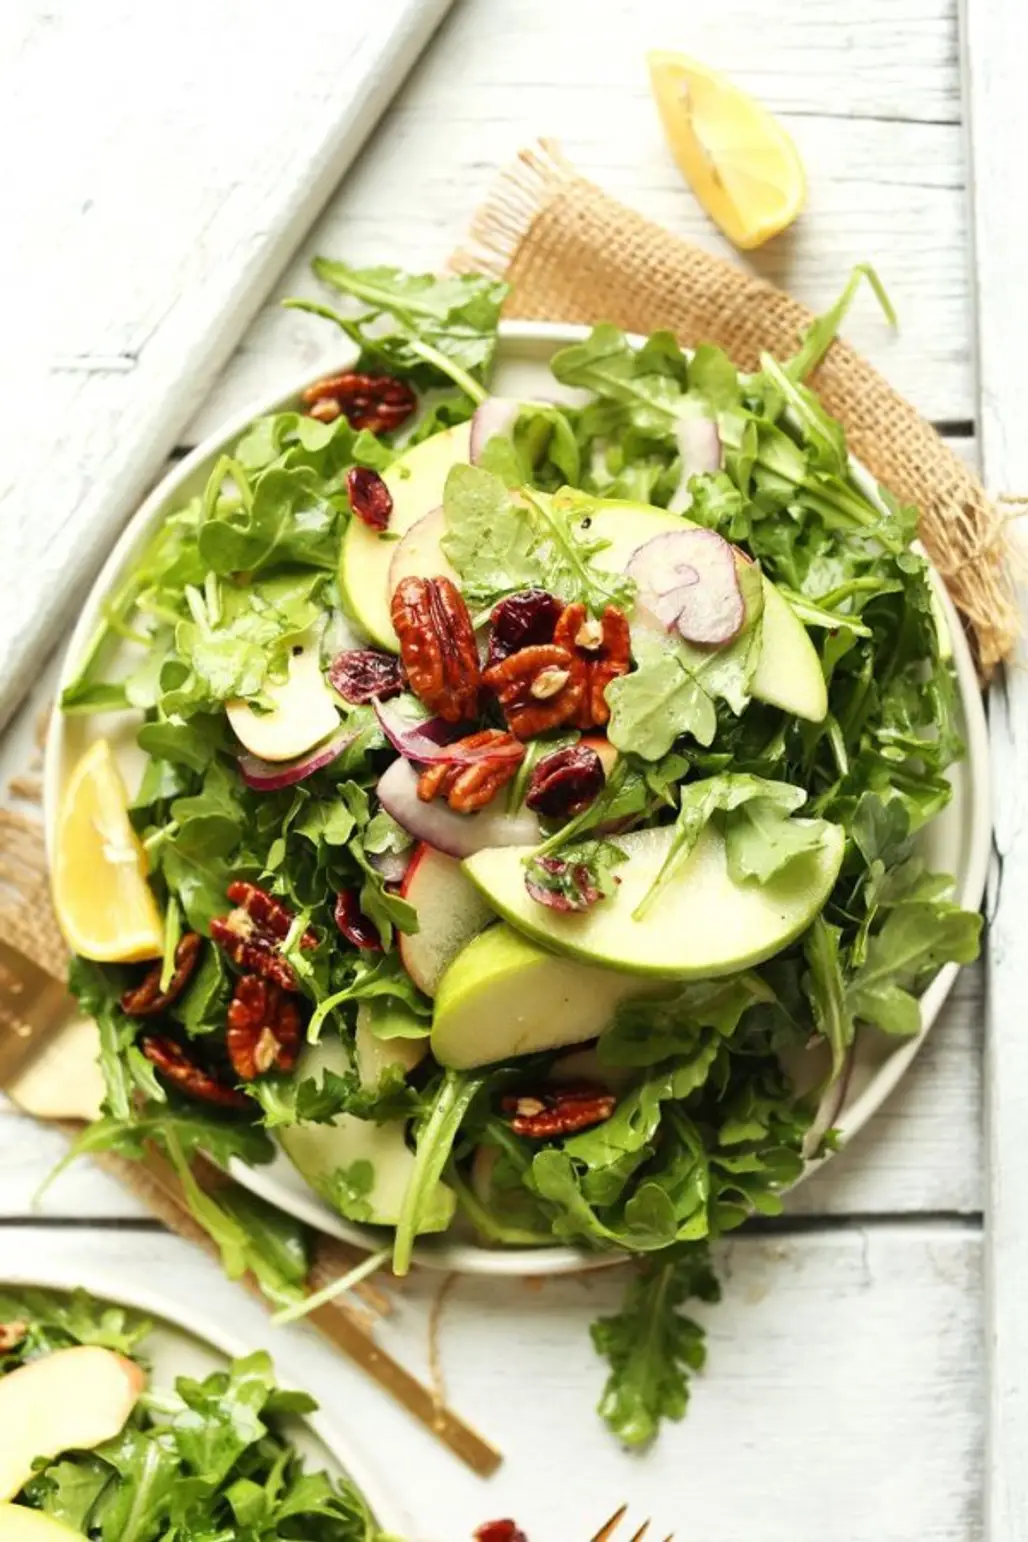 Arugula Salad with Pecans, Apples, Cranberries, and a Vibrant Lemon Vinaigrette